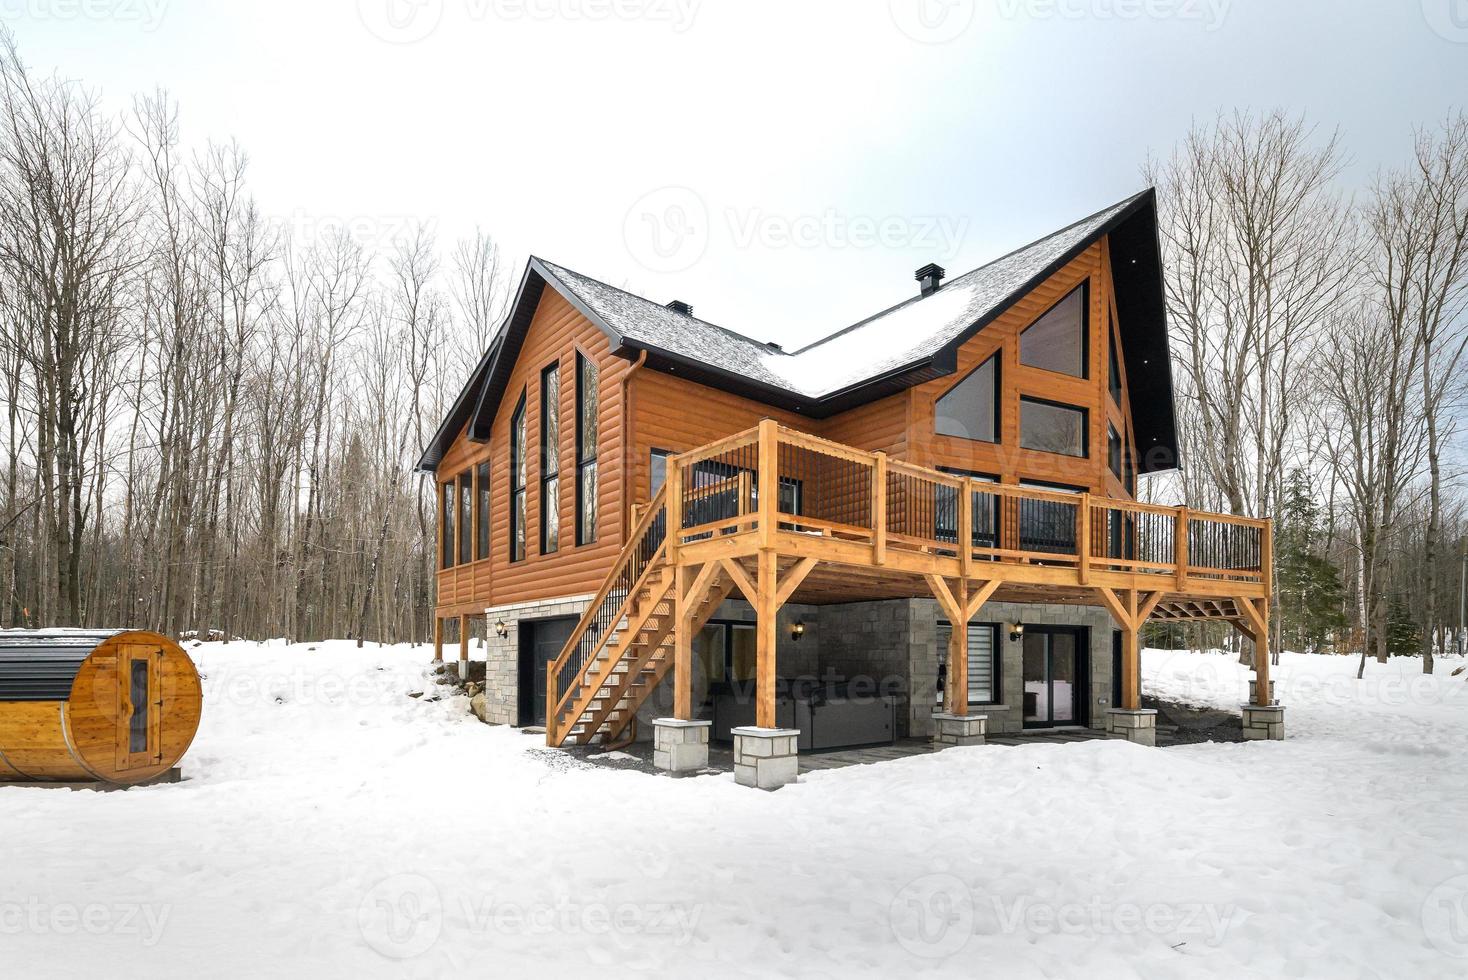 winter huisjes in afgelegen Oppervlakte quebec, Canada, log huis met sauna, spa, slaapkamers, zwembad, leven kamer, messanine, keuken en badkamers foto